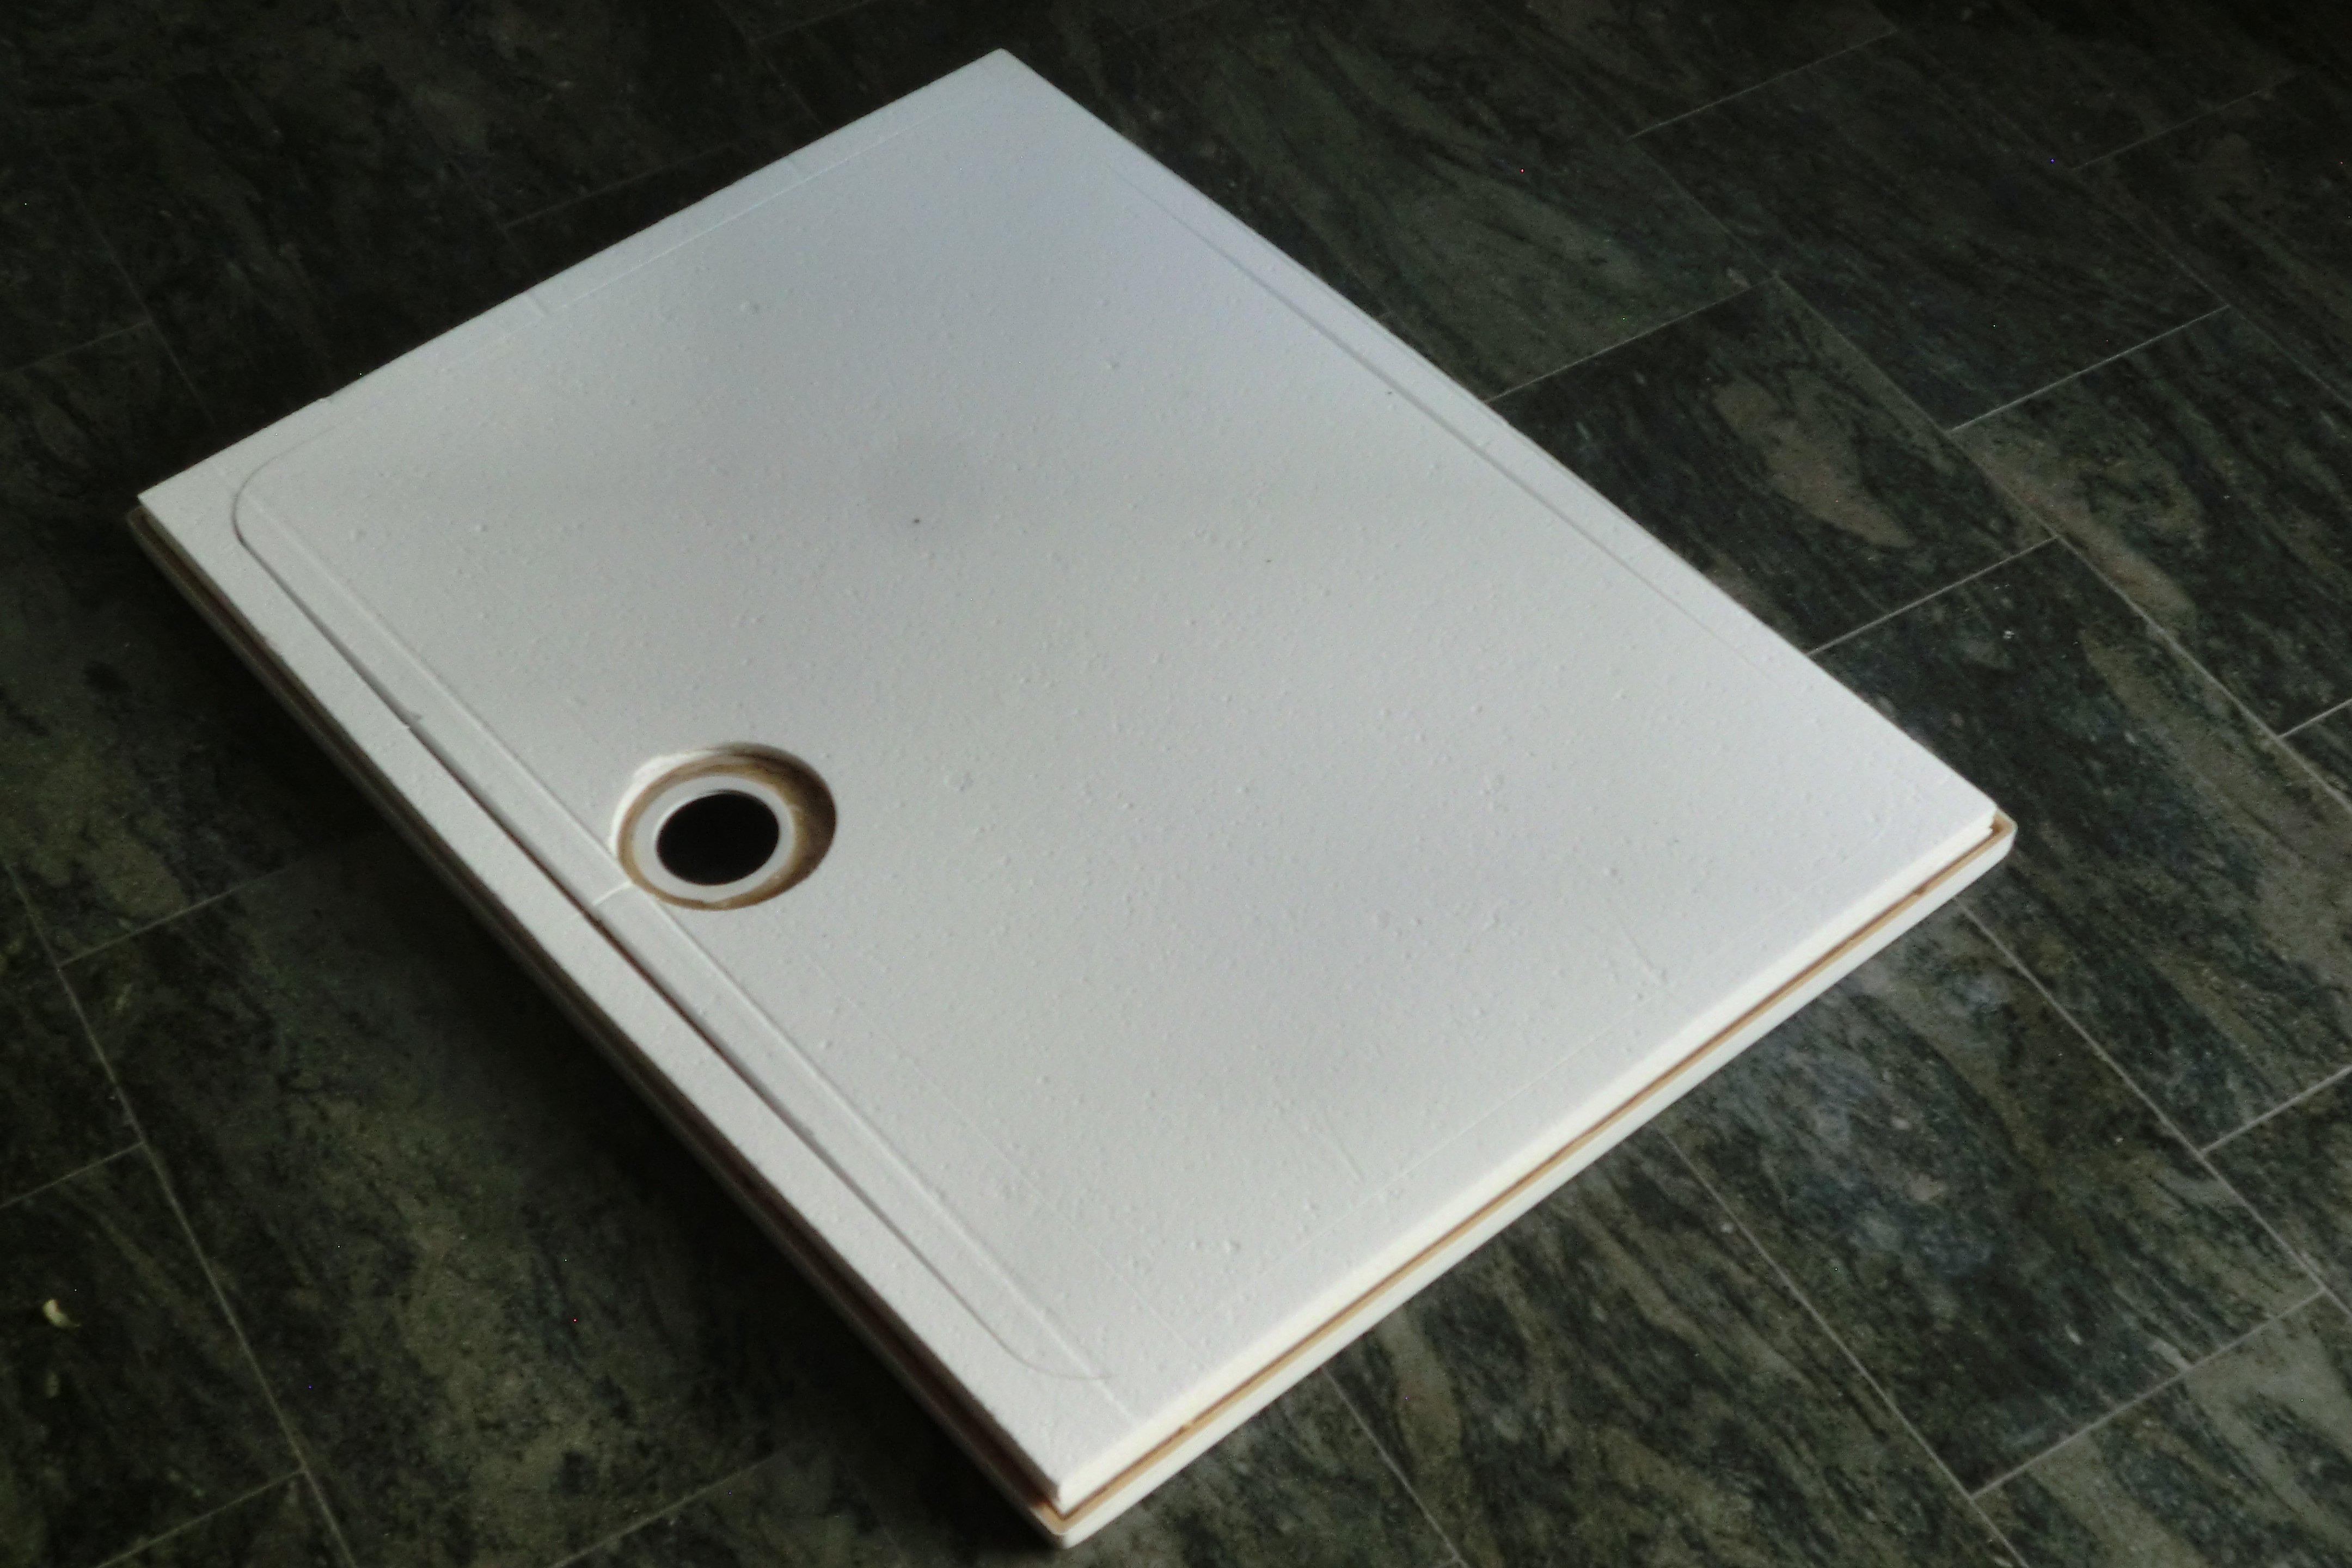 KOMPLETT-PAKET: Duschwanne 120 x 75 cm superflach 3,5 cm weiß mit GERADER STYROPOR-UNTERSEITE Acryl + Styroporträger/Wannenträger + Ablaufgarnitur chrom DN 90  